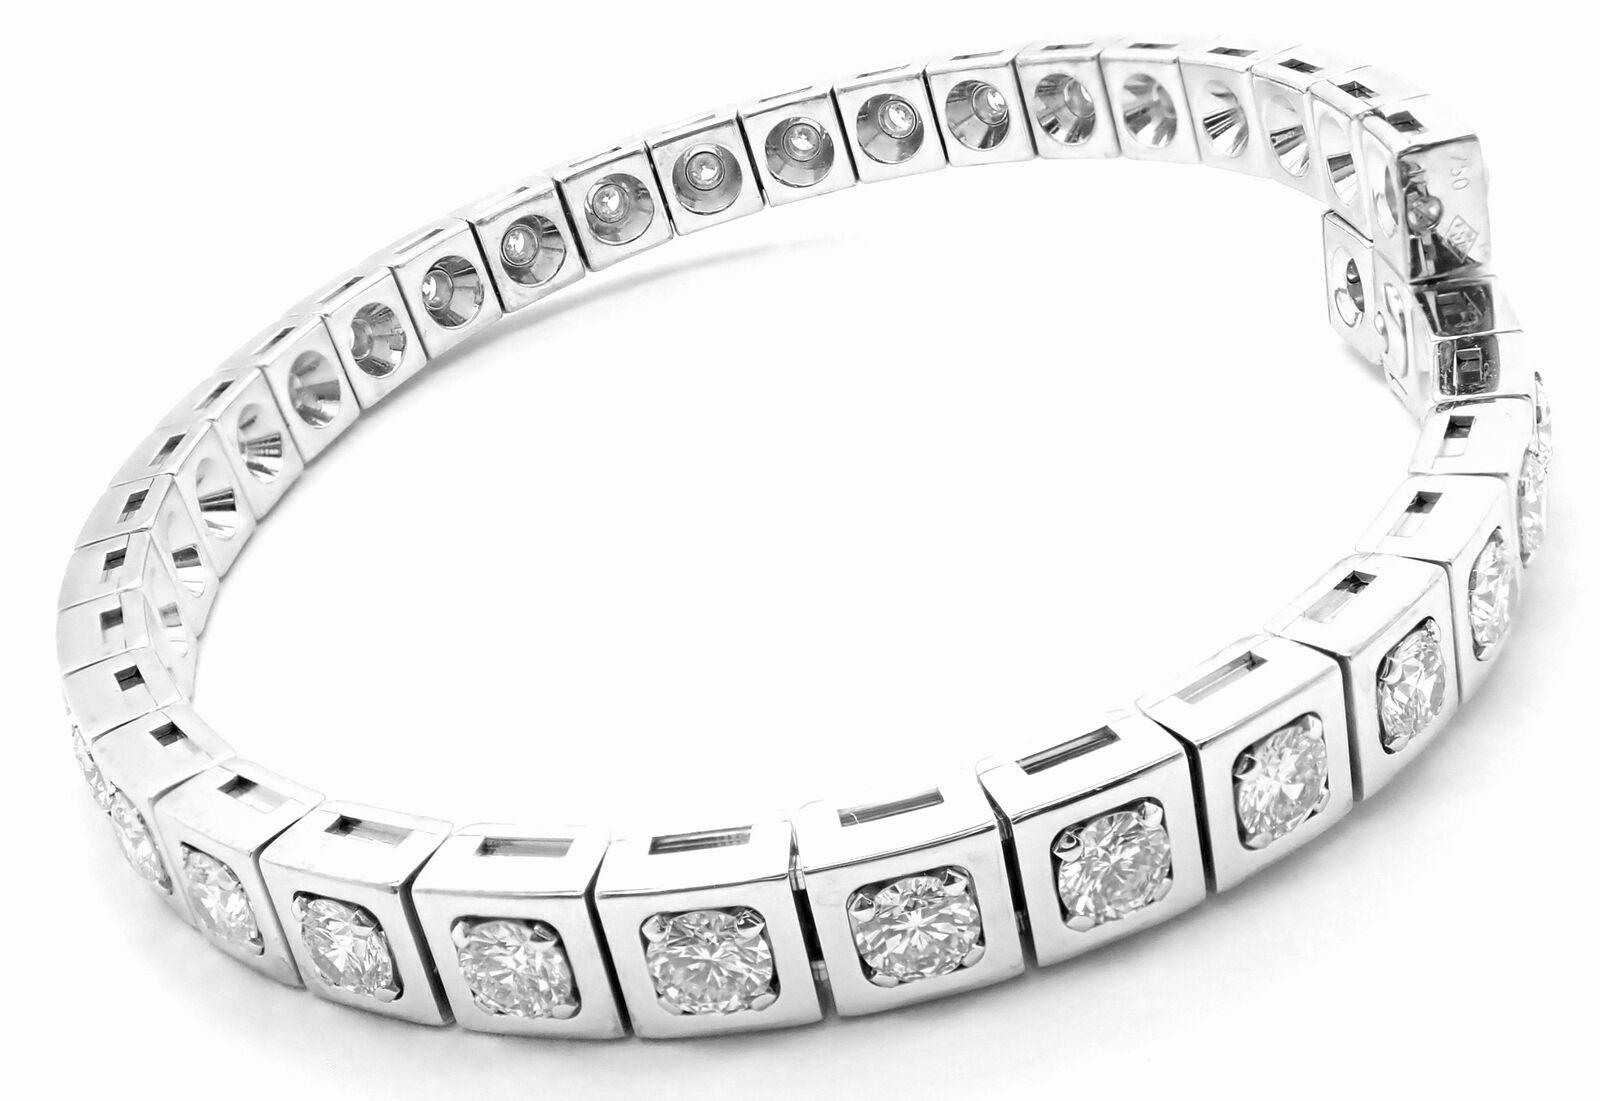 bracelet tennis Tectonique en or blanc 18 carats avec diamants par Cartier. 
Avec 36 diamants ronds de taille brillante de pureté VVS1 et de couleur E. Poids total d'environ 5,76 ct
Détails : 
Longueur : 7